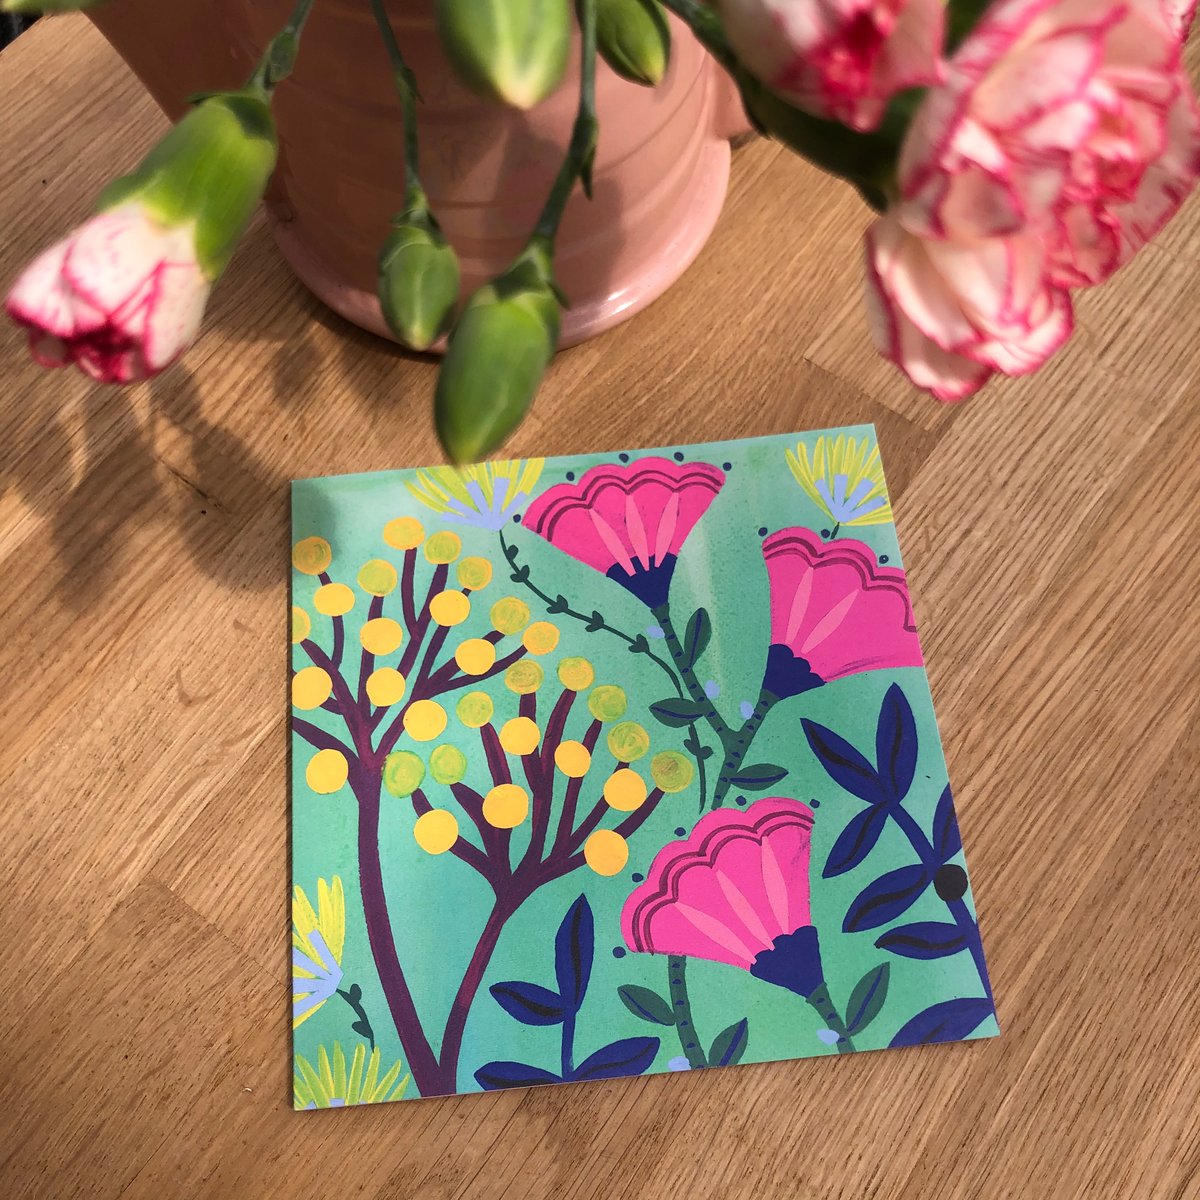 Fantastical Floral Card Set of 5